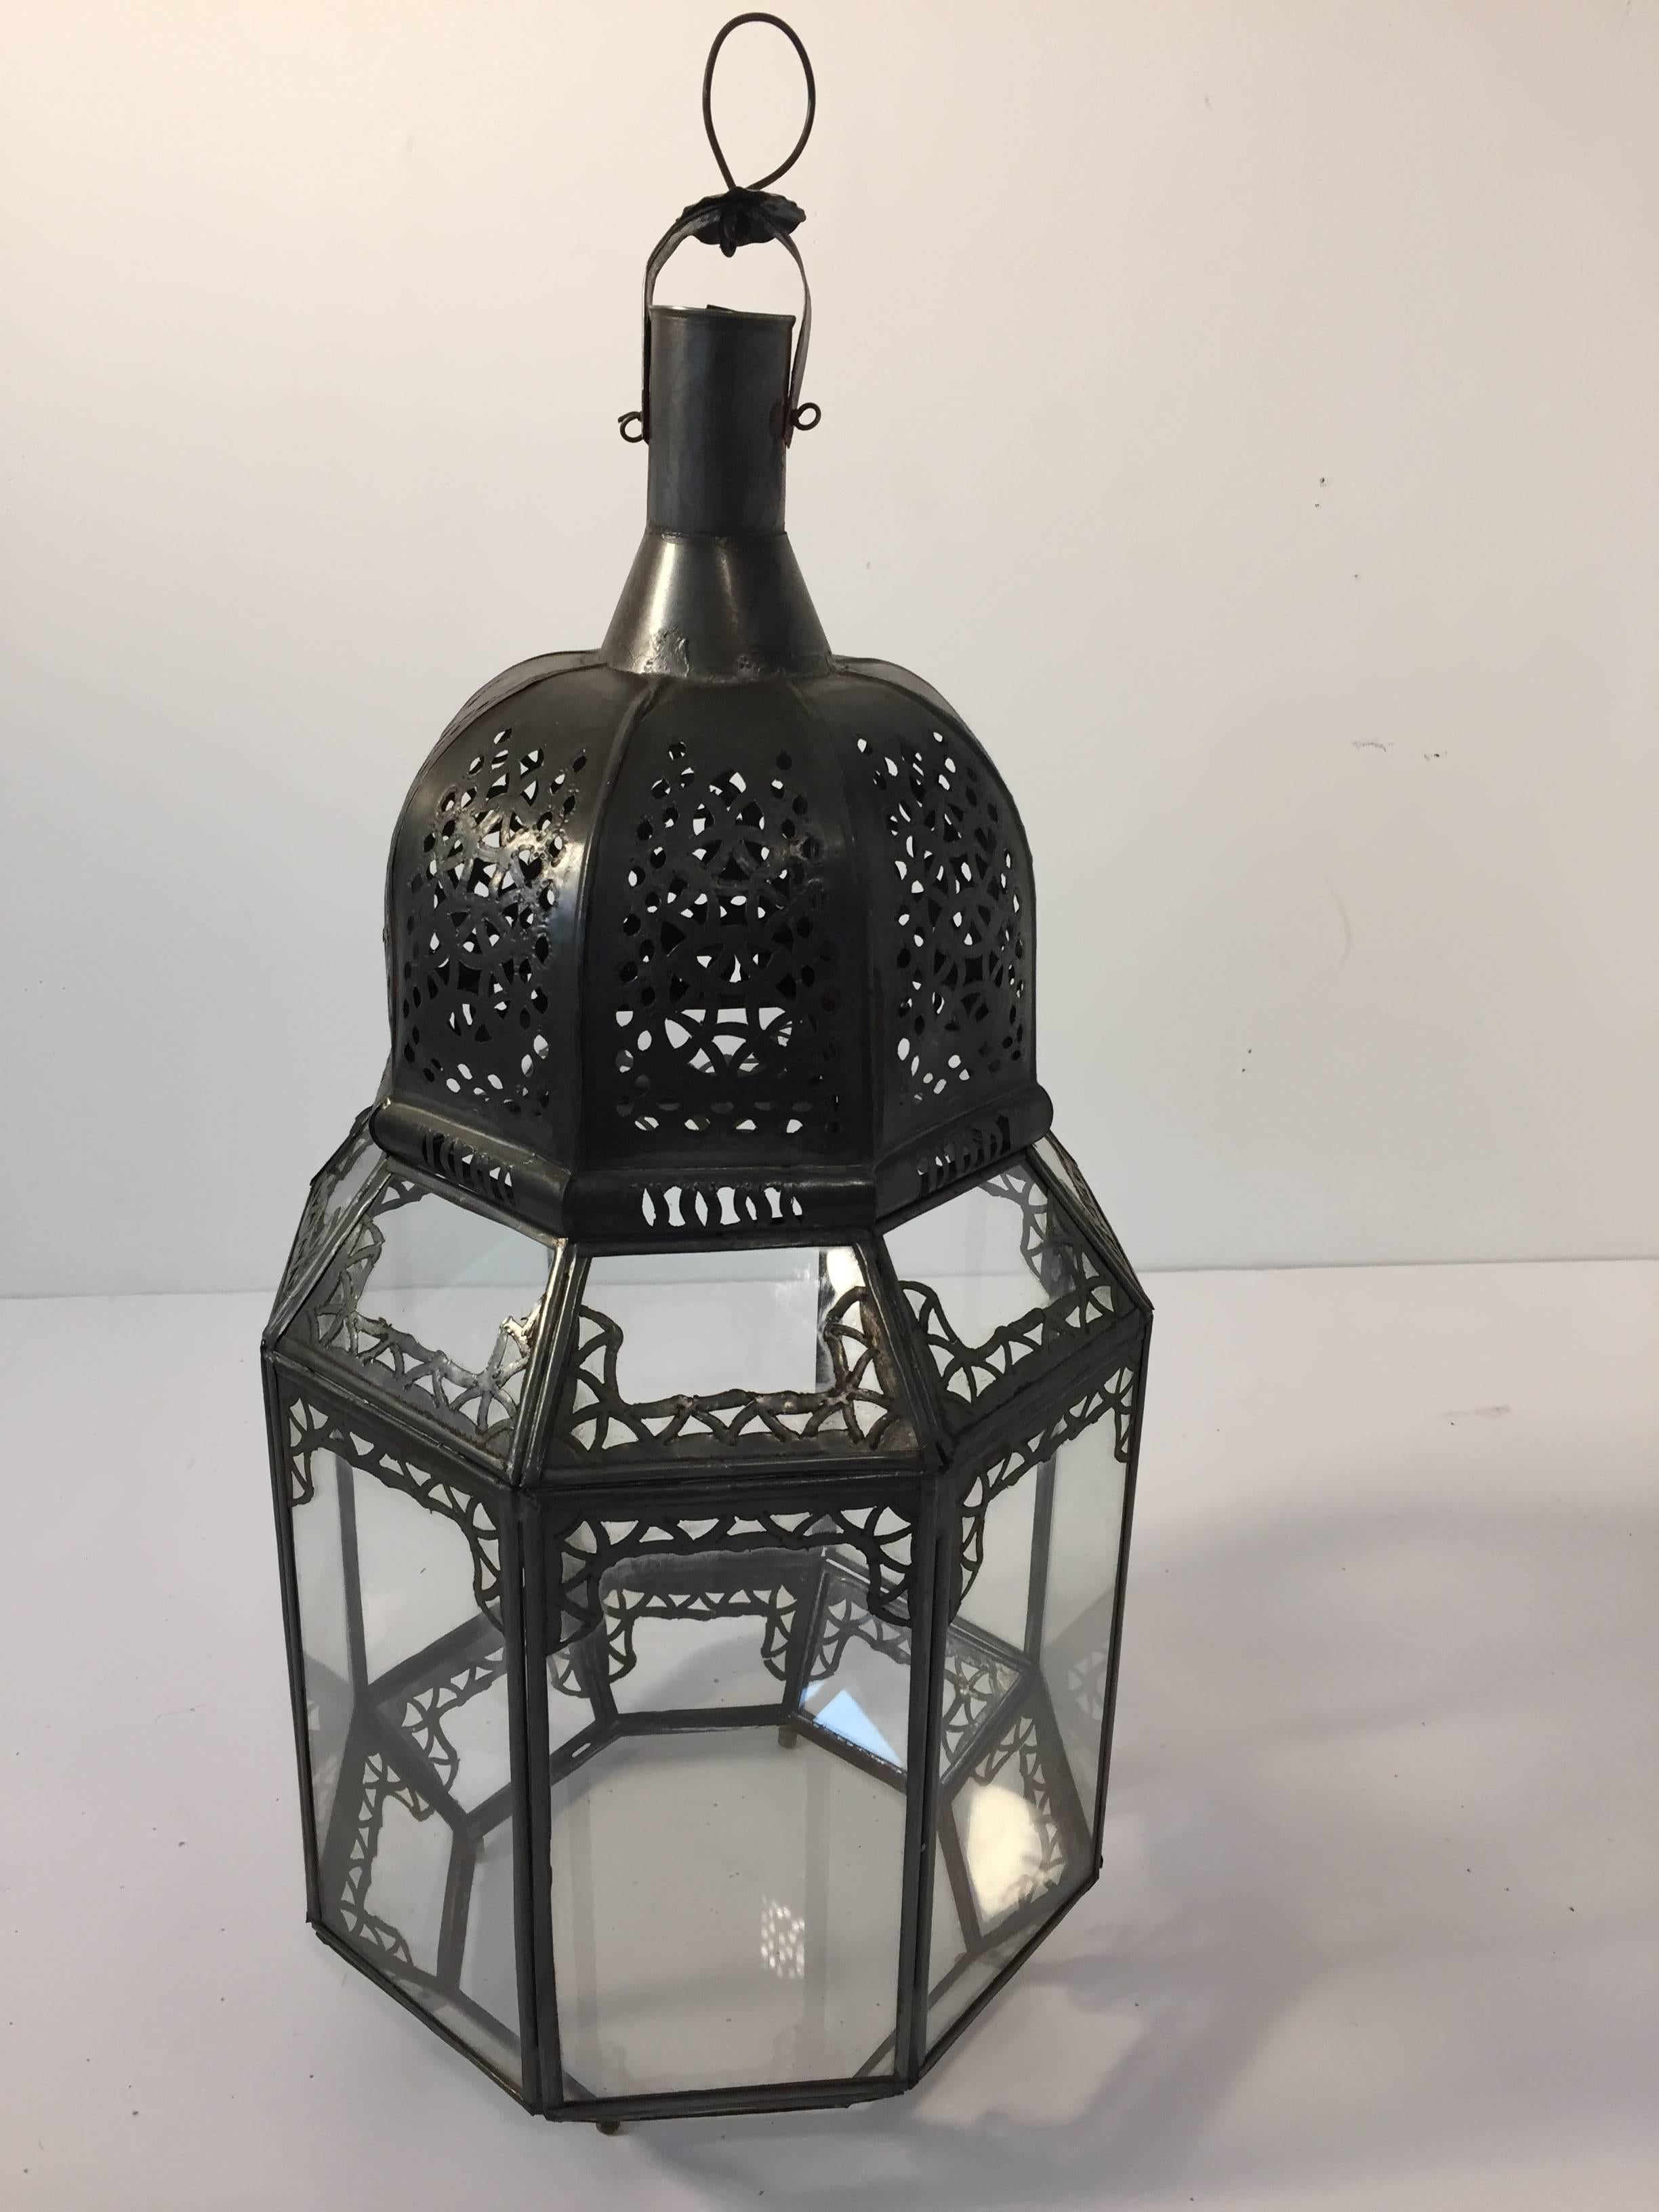 Vintage-Laterne aus marokkanischem Klarglas mit filigranem Metall.
Achteckige Form, in feiner Handarbeit von Kunsthandwerkern in Marokko hergestellt.
Bronzefarbene Metalloberfläche.
Kann mit einer Kerze verwendet werden oder als marokkanische